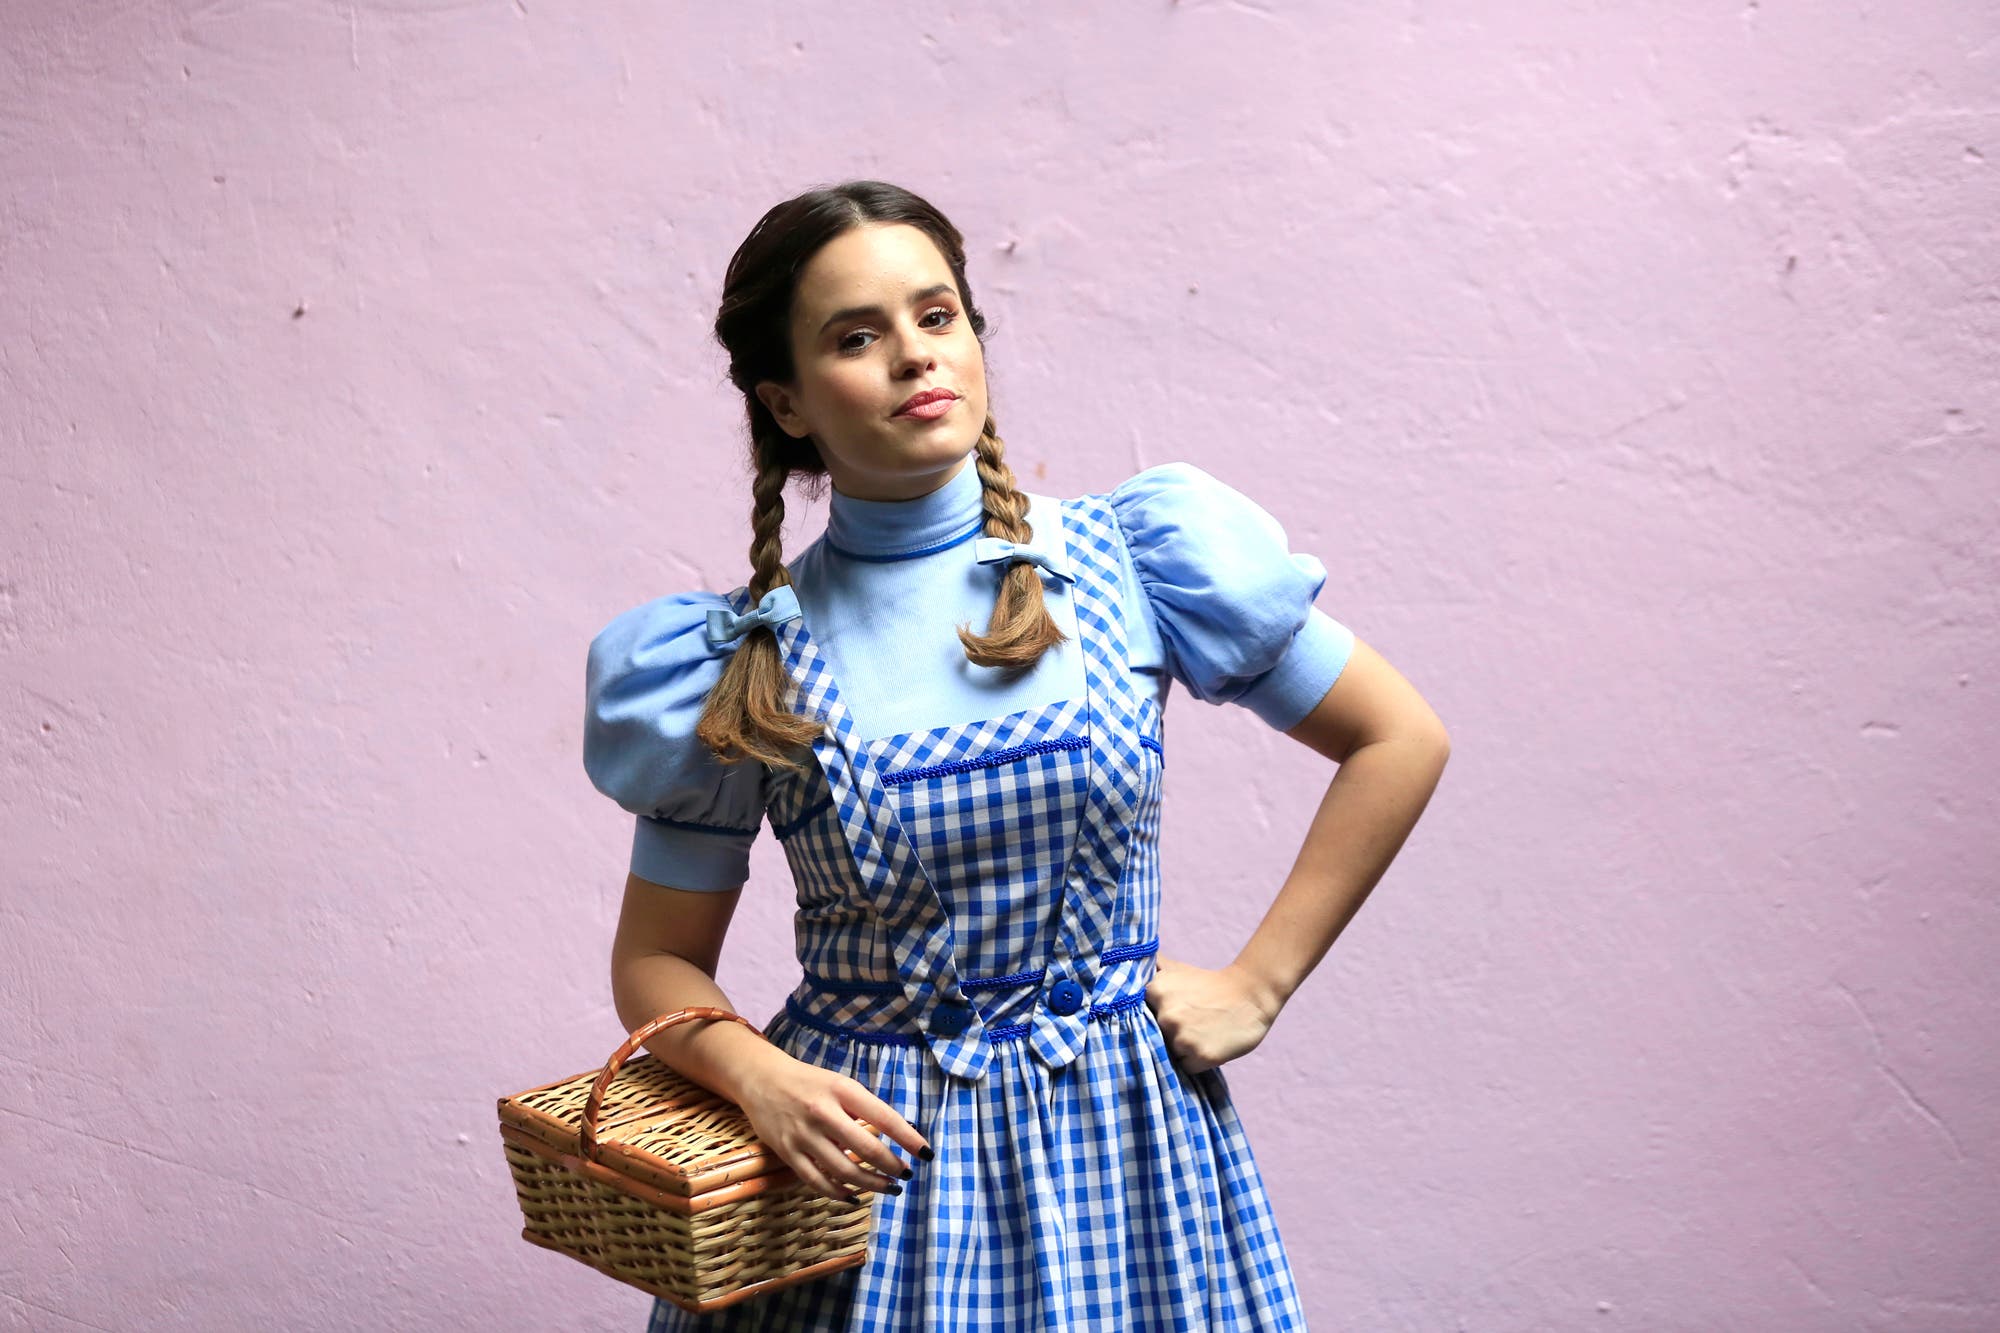 Sofi Morandi es Dorothy en la nueva versión teatral de "El mago de Oz".